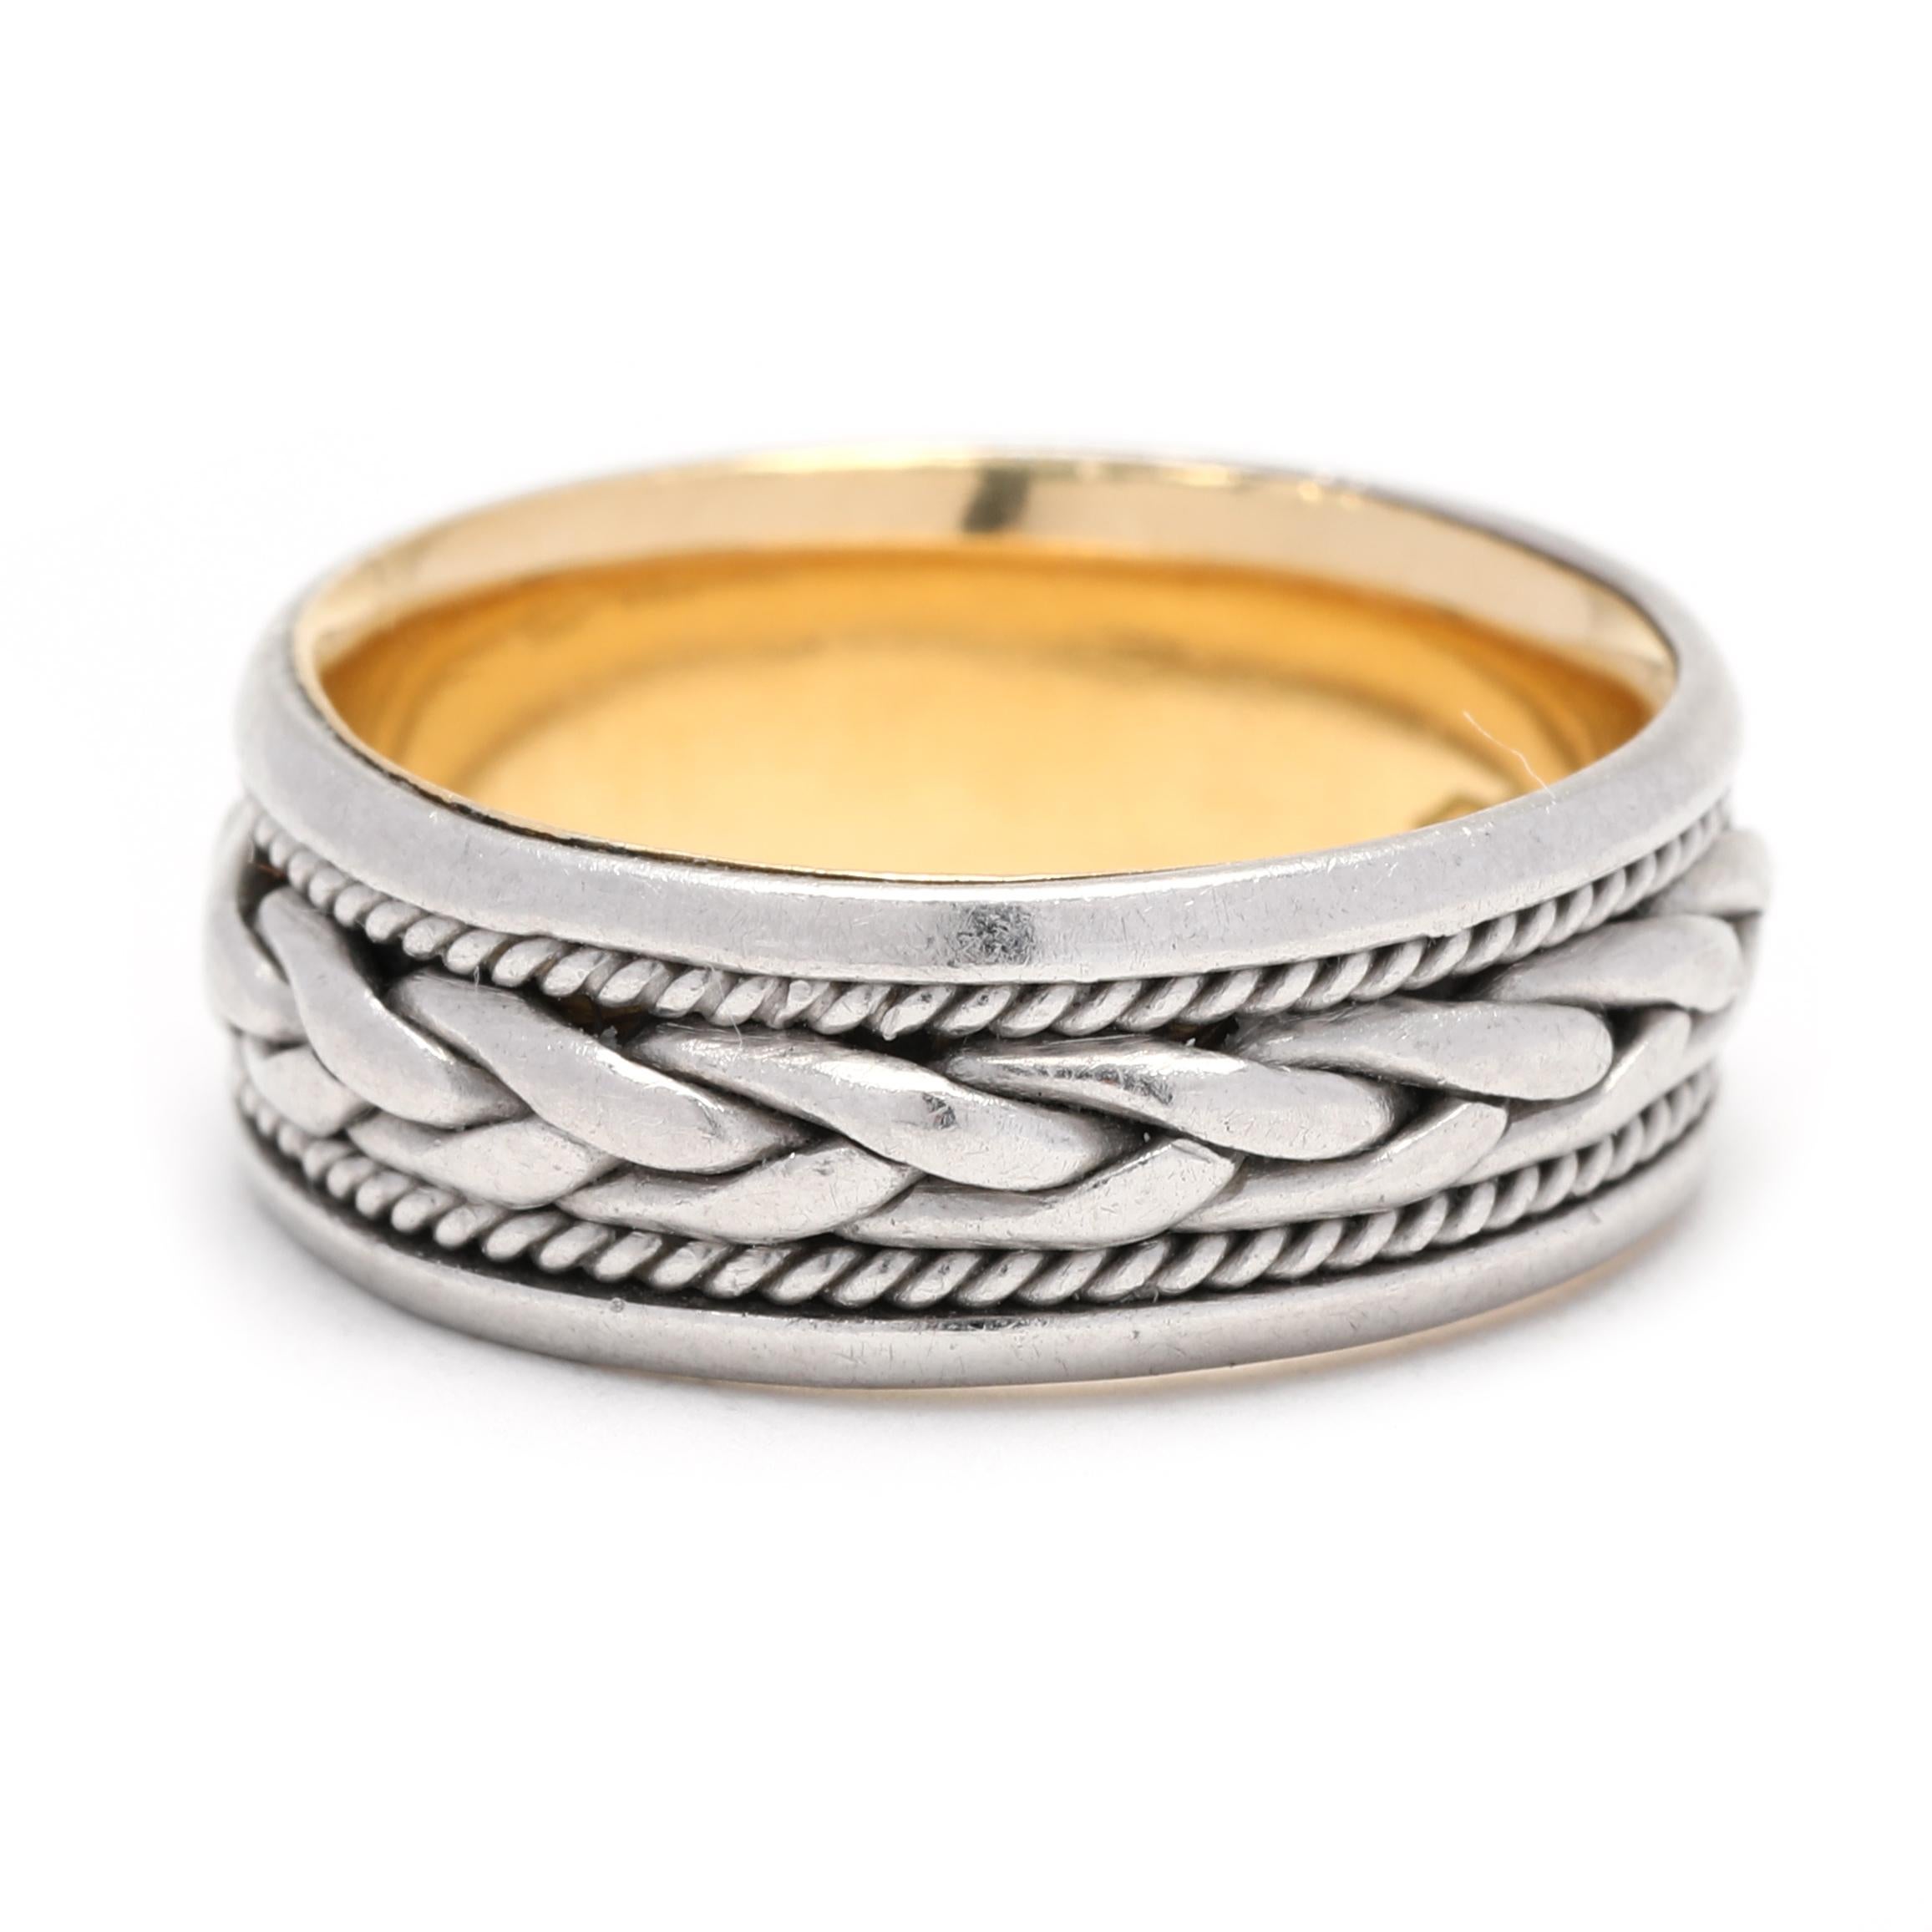 Cet anneau de mariage éternel tressé, unique en son genre, est un symbole éblouissant de votre amour éternel. Fabriquée en or jaune 18 carats et en platine, cette magnifique bague est ornée d'un motif tressé complexe qui s'étend sur tout le pourtour